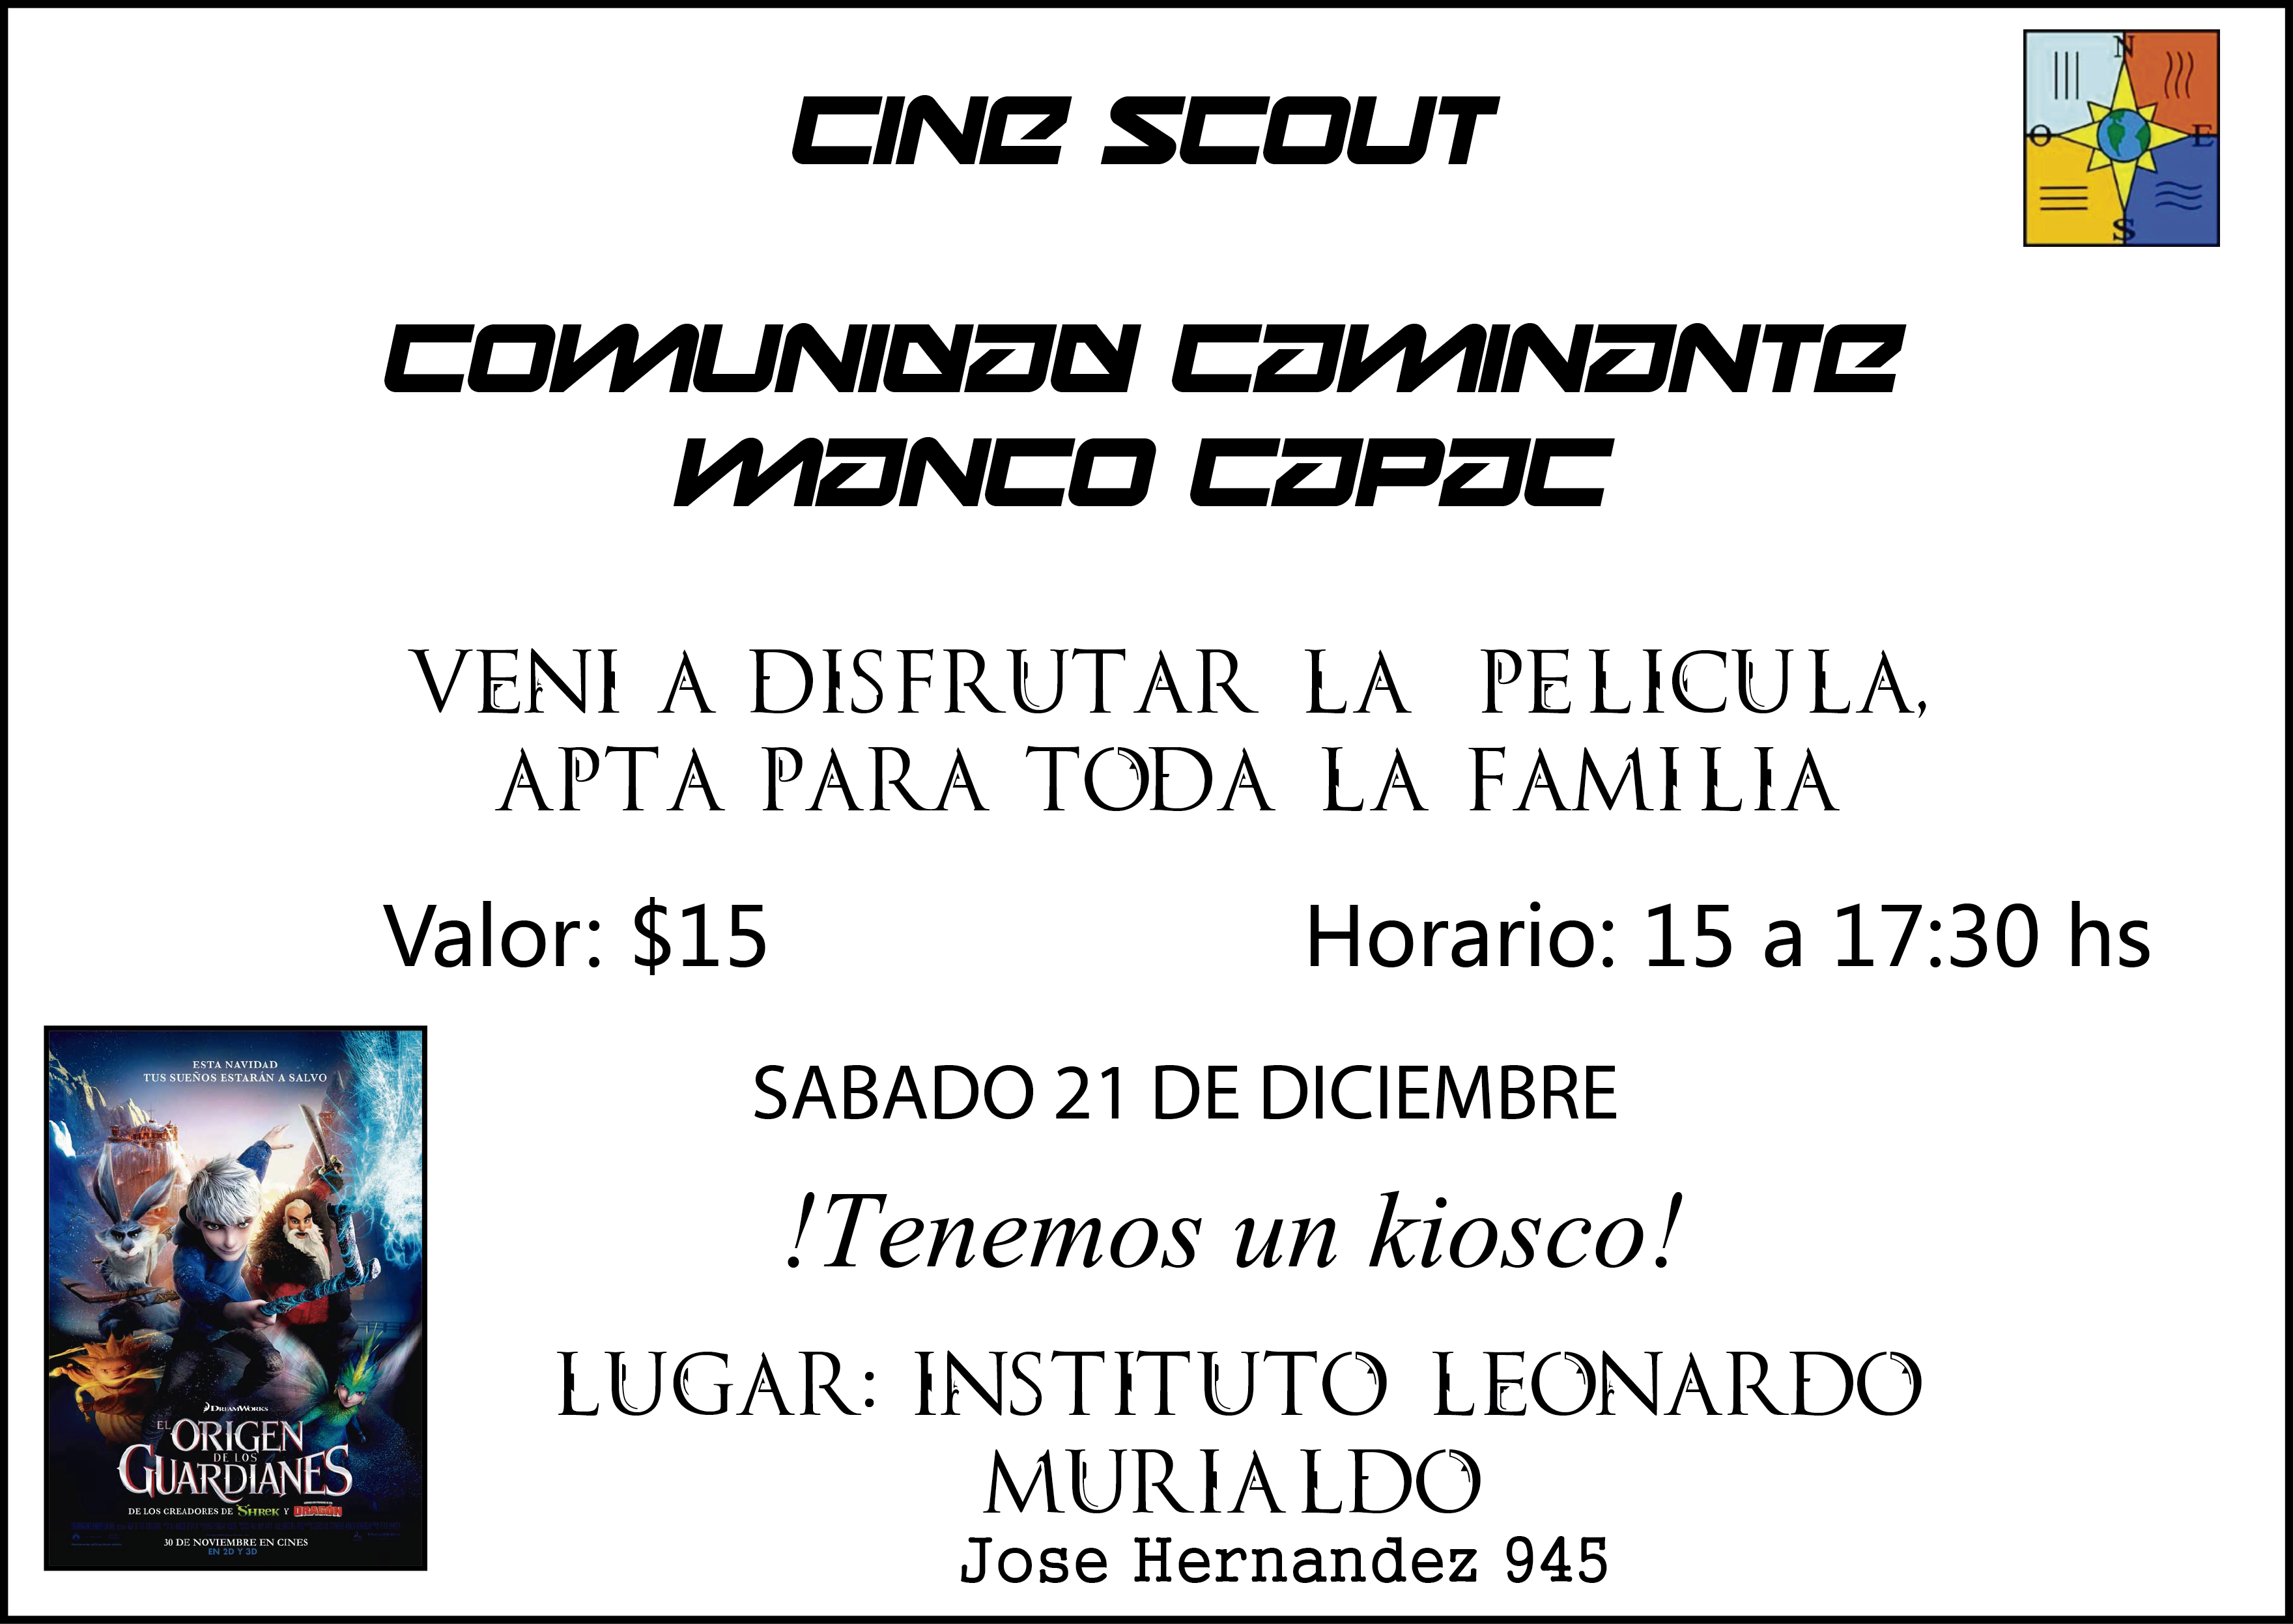 Cine Scout Comunidad de Caminantes - Grupo Scout San Leonardo Murialdo